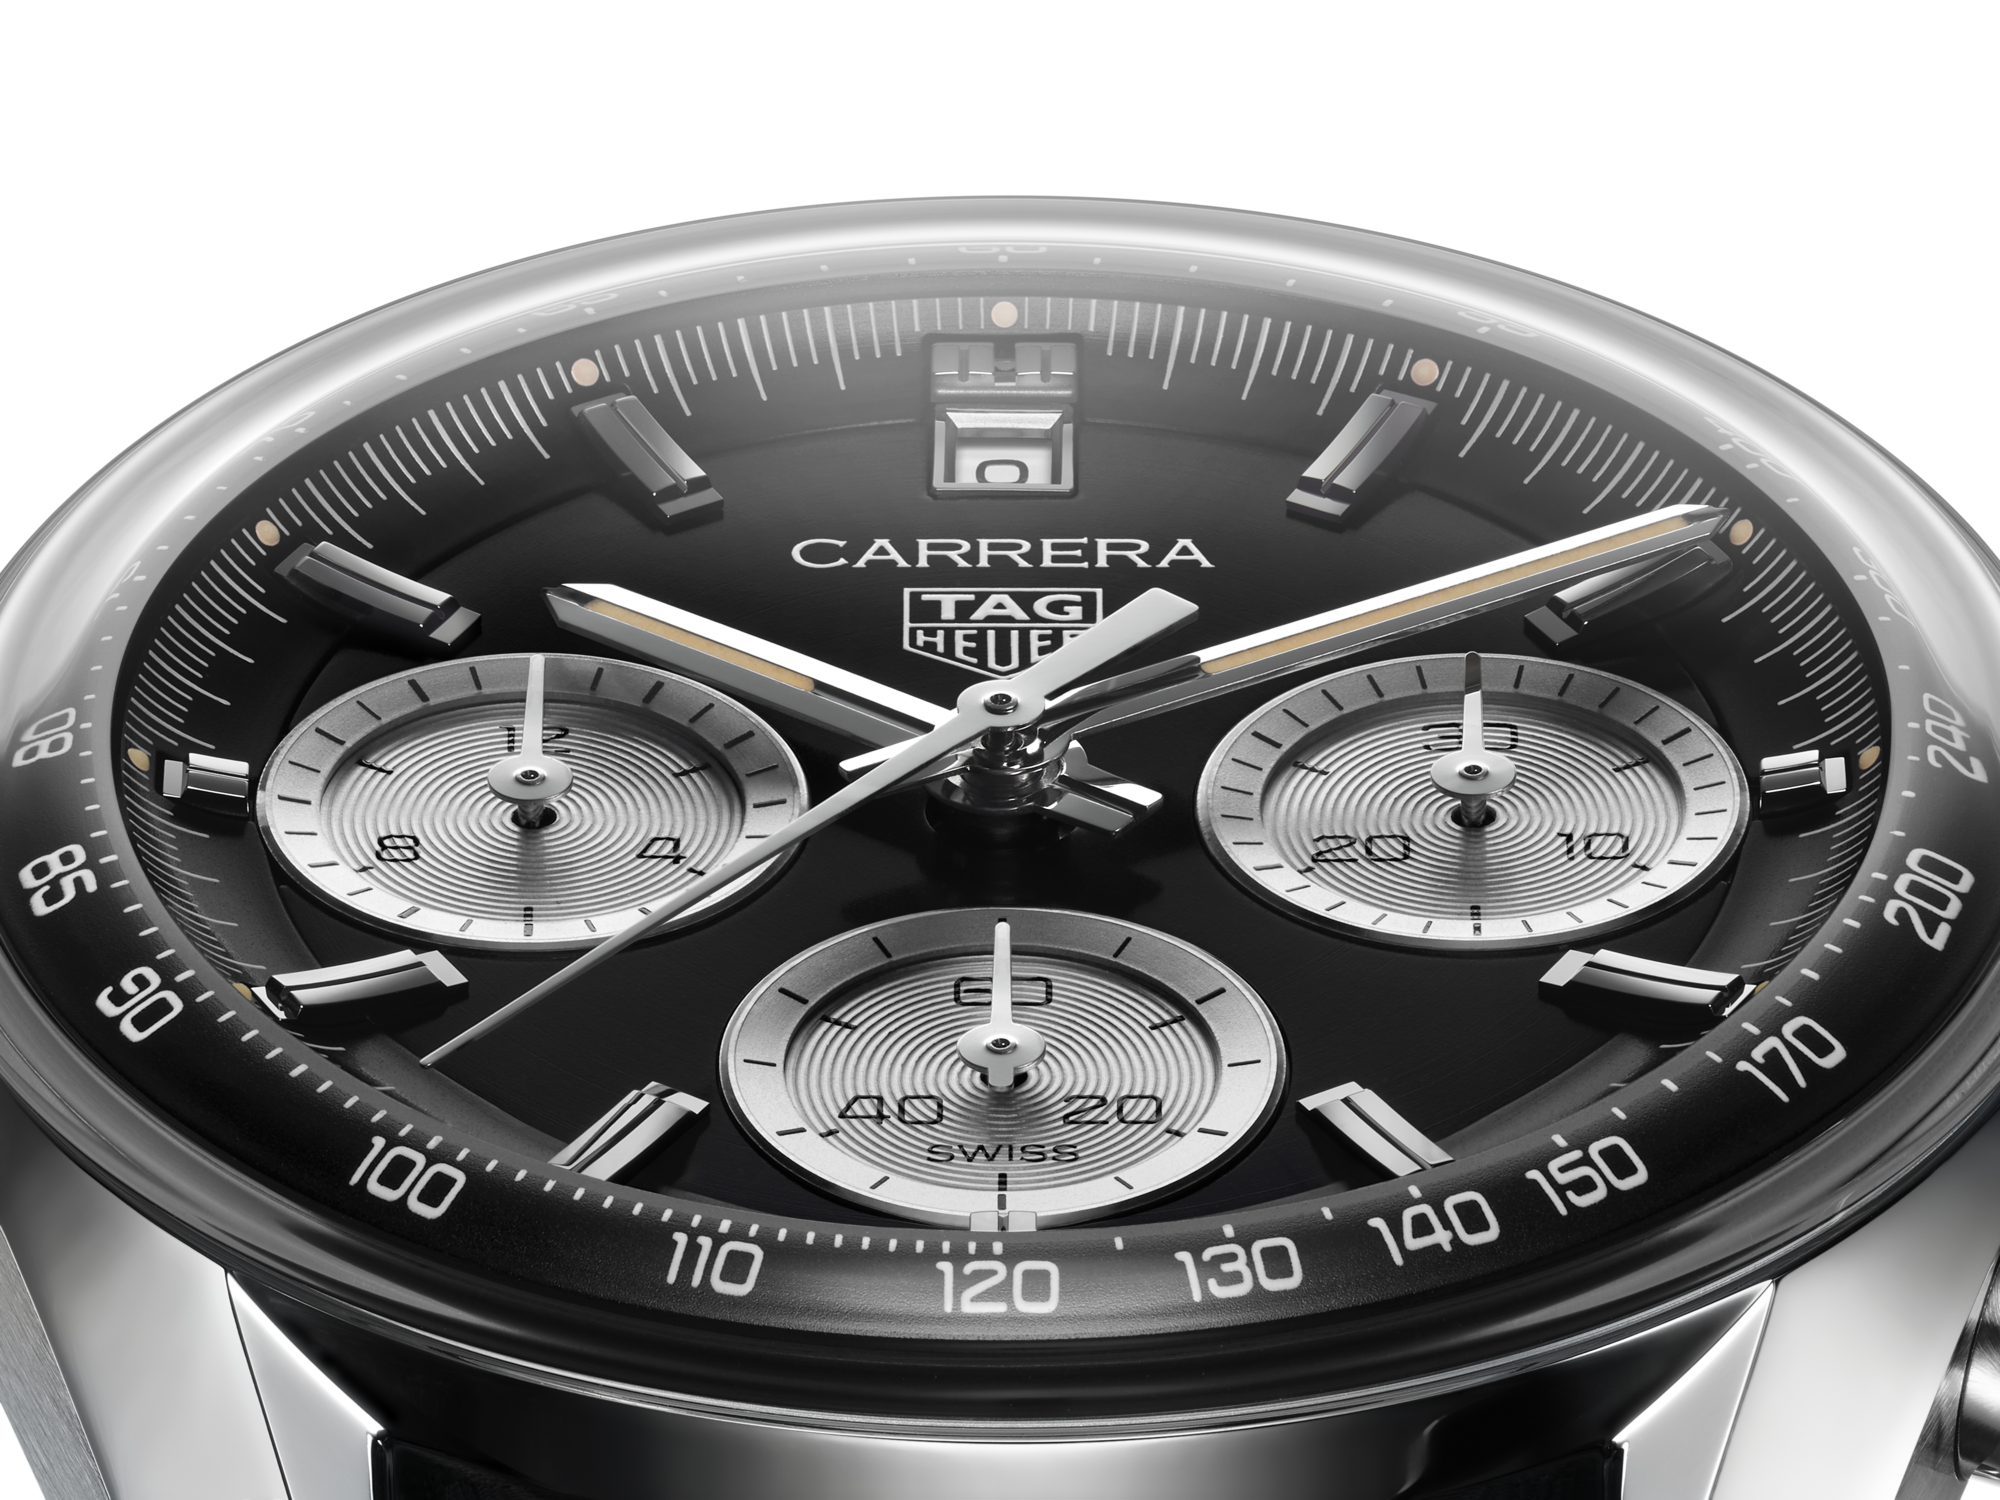 タグホイヤー カレラ クロノグラフ CV2050-2 18k コンビ - 腕時計(アナログ)